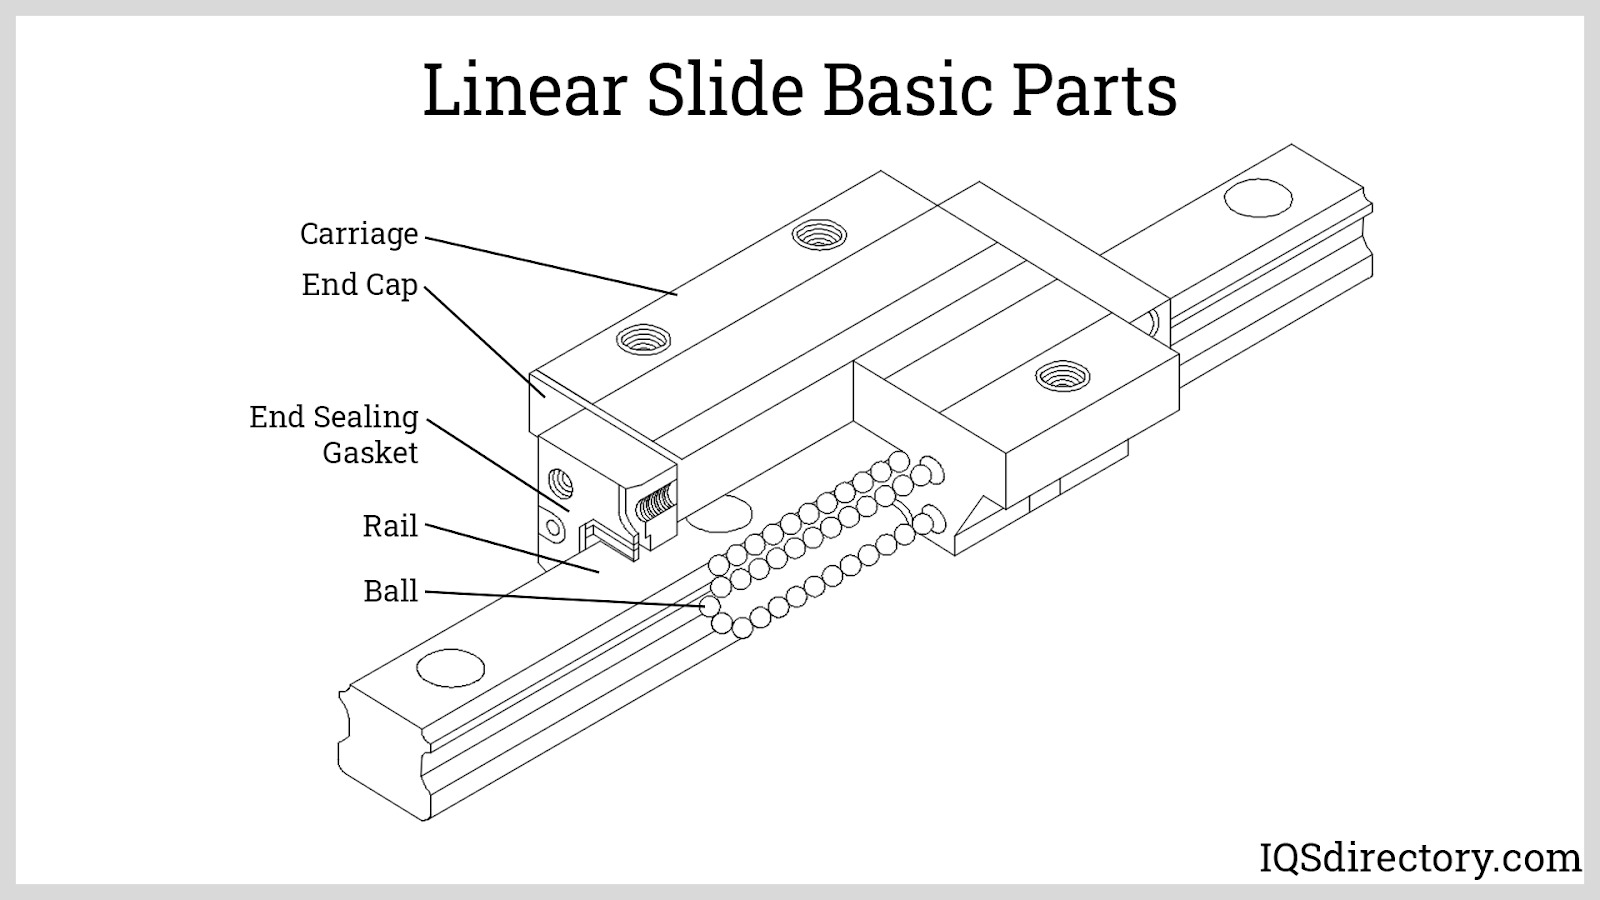 Linear Slide Basic Parts